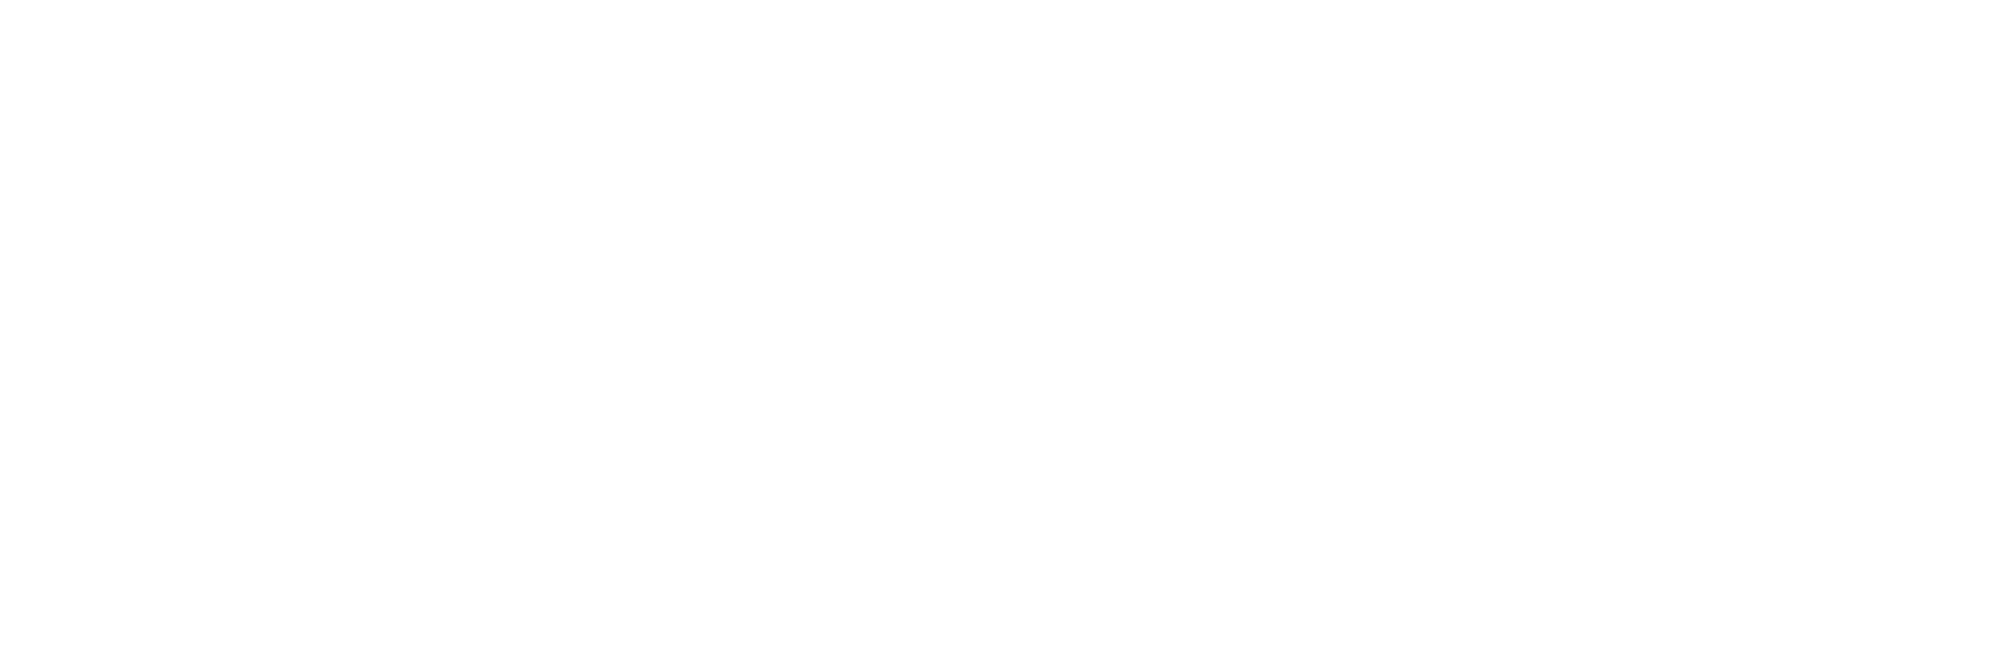 VW_Weißgrau